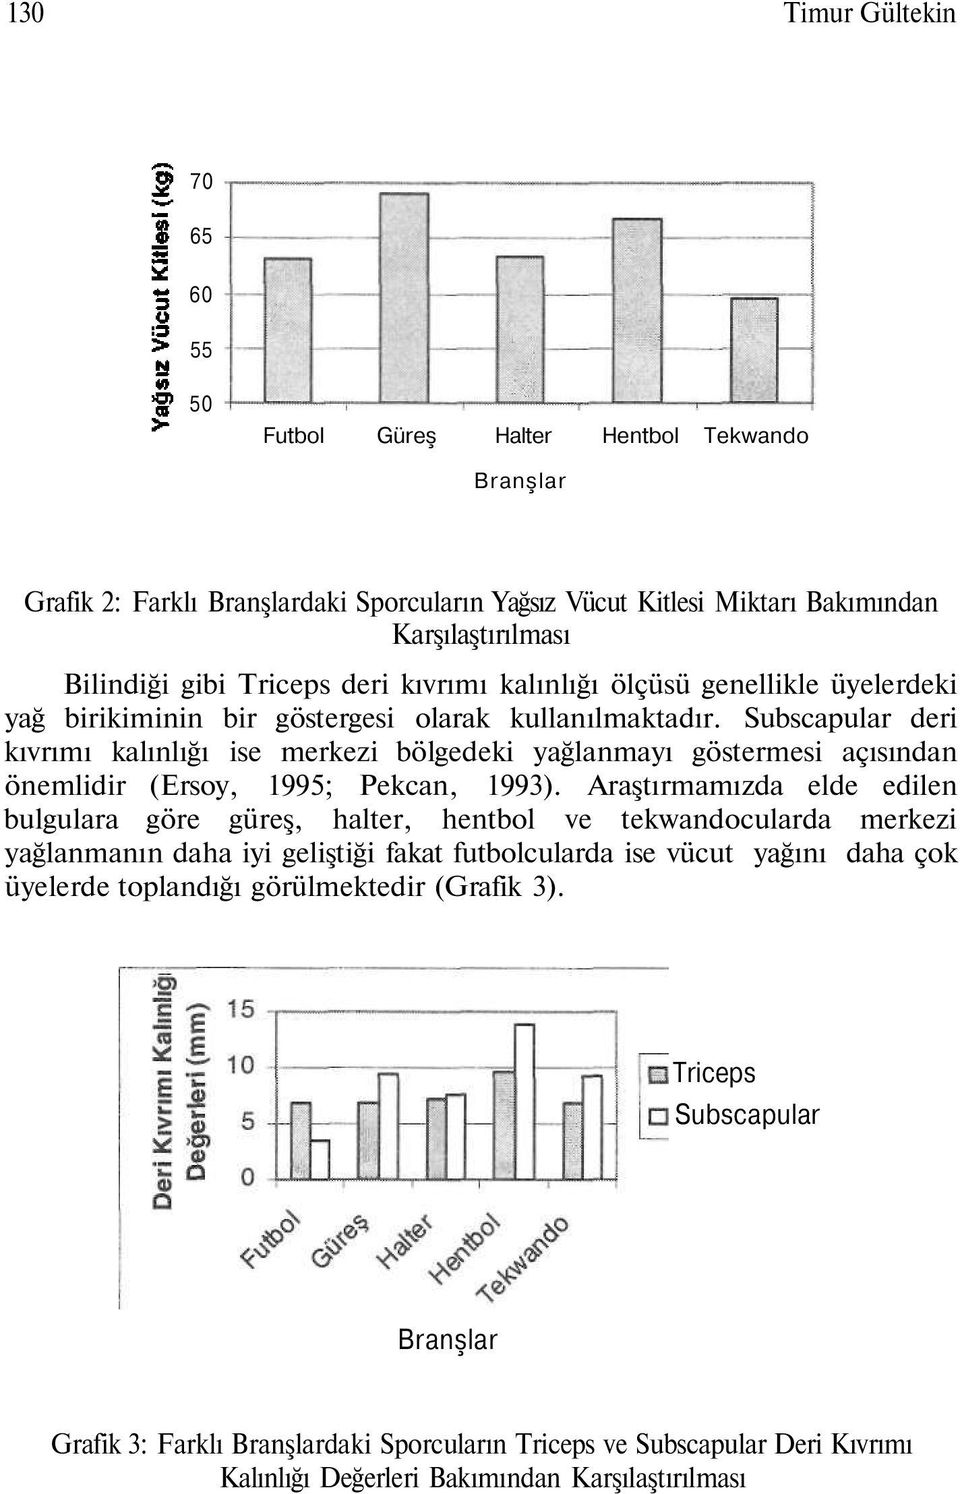 Subscapular deri kıvrımı kalınlığı ise merkezi bölgedeki yağlanmayı göstermesi açısından önemlidir (Ersoy, 1995; Pekcan, 1993).